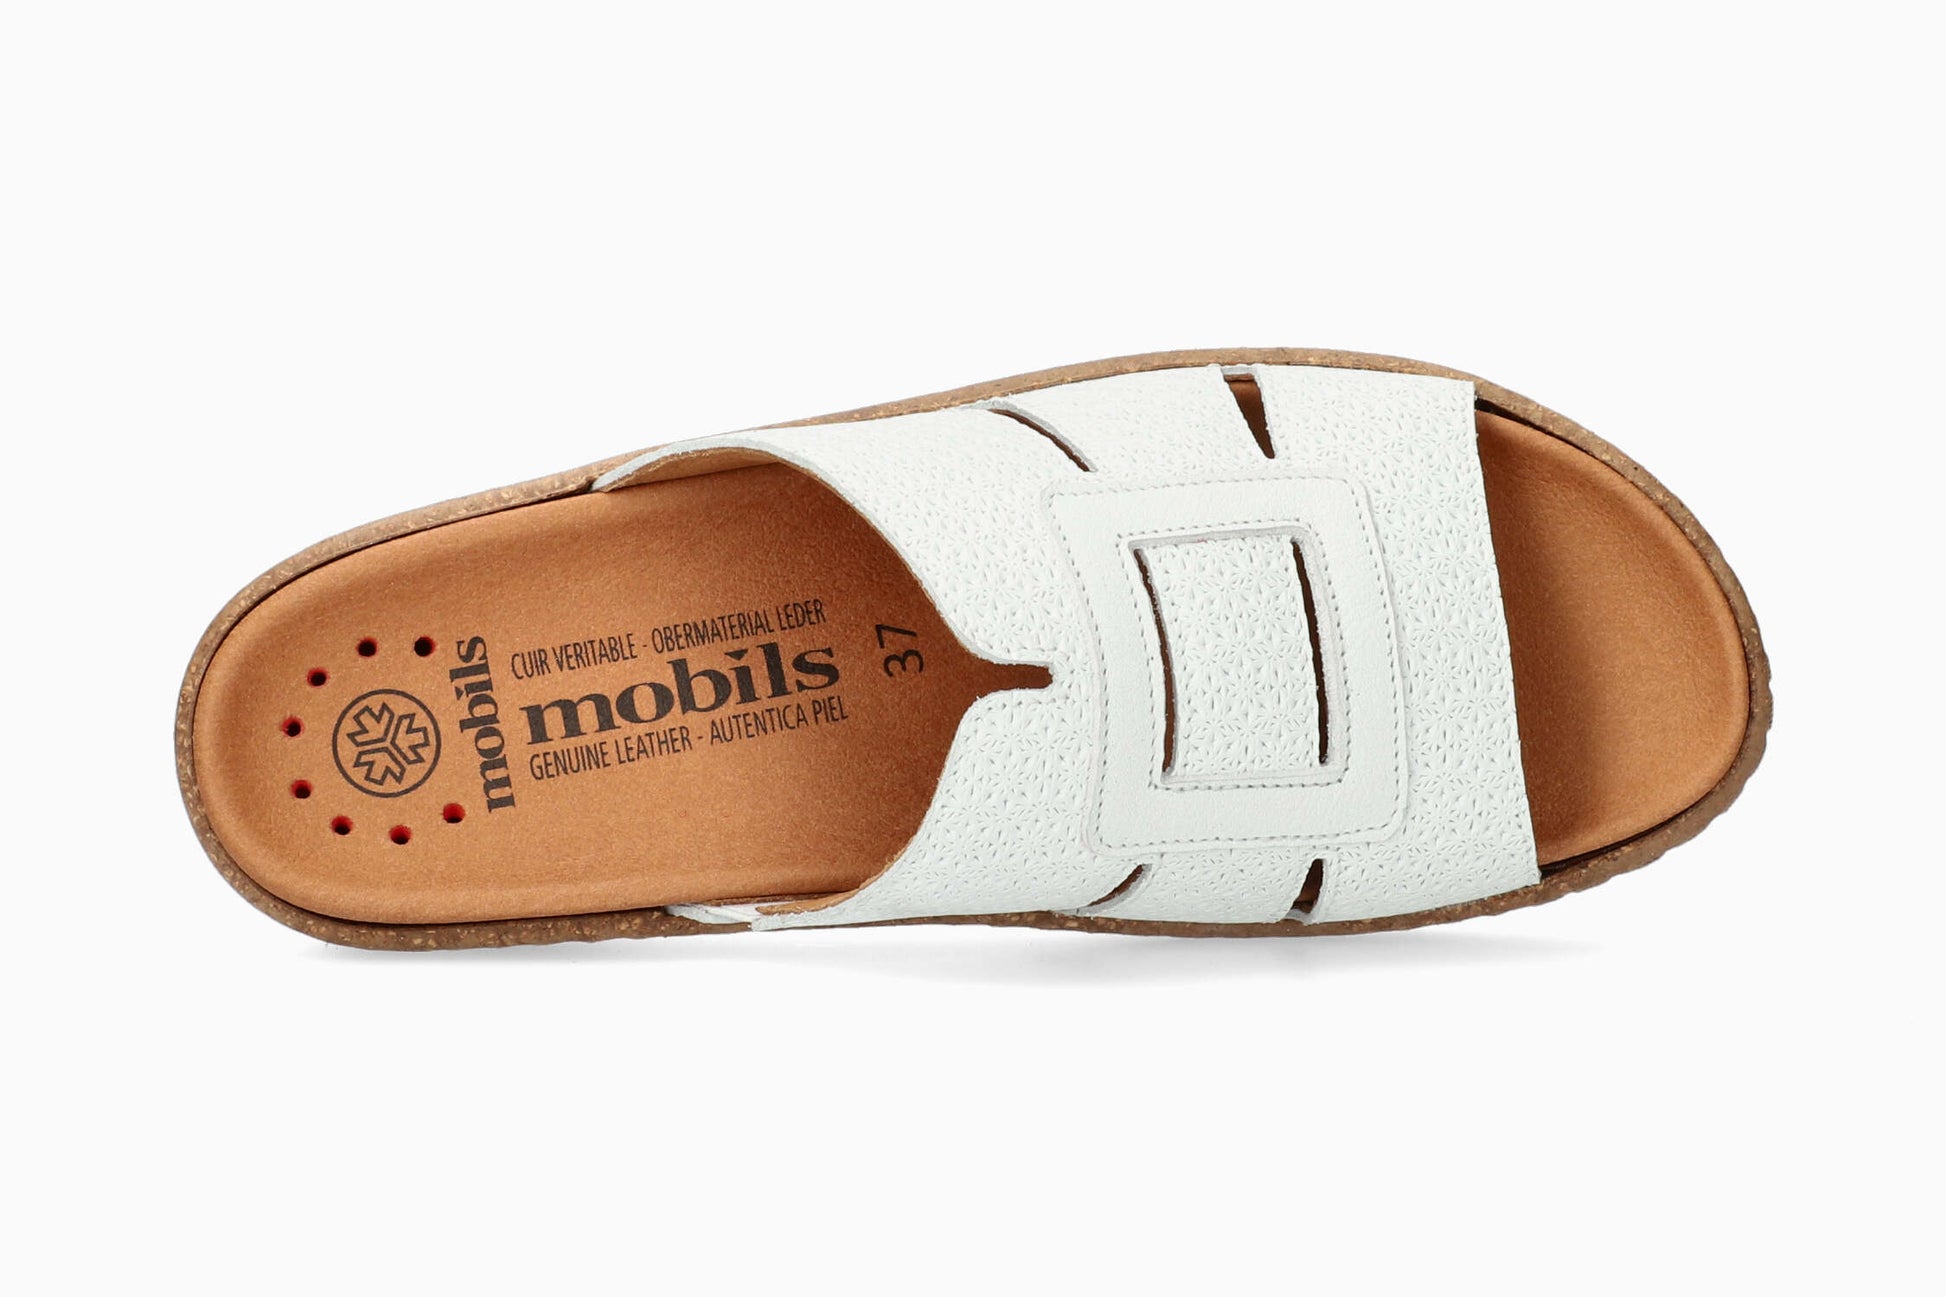 Mobils Romee White Women's Sandal Top